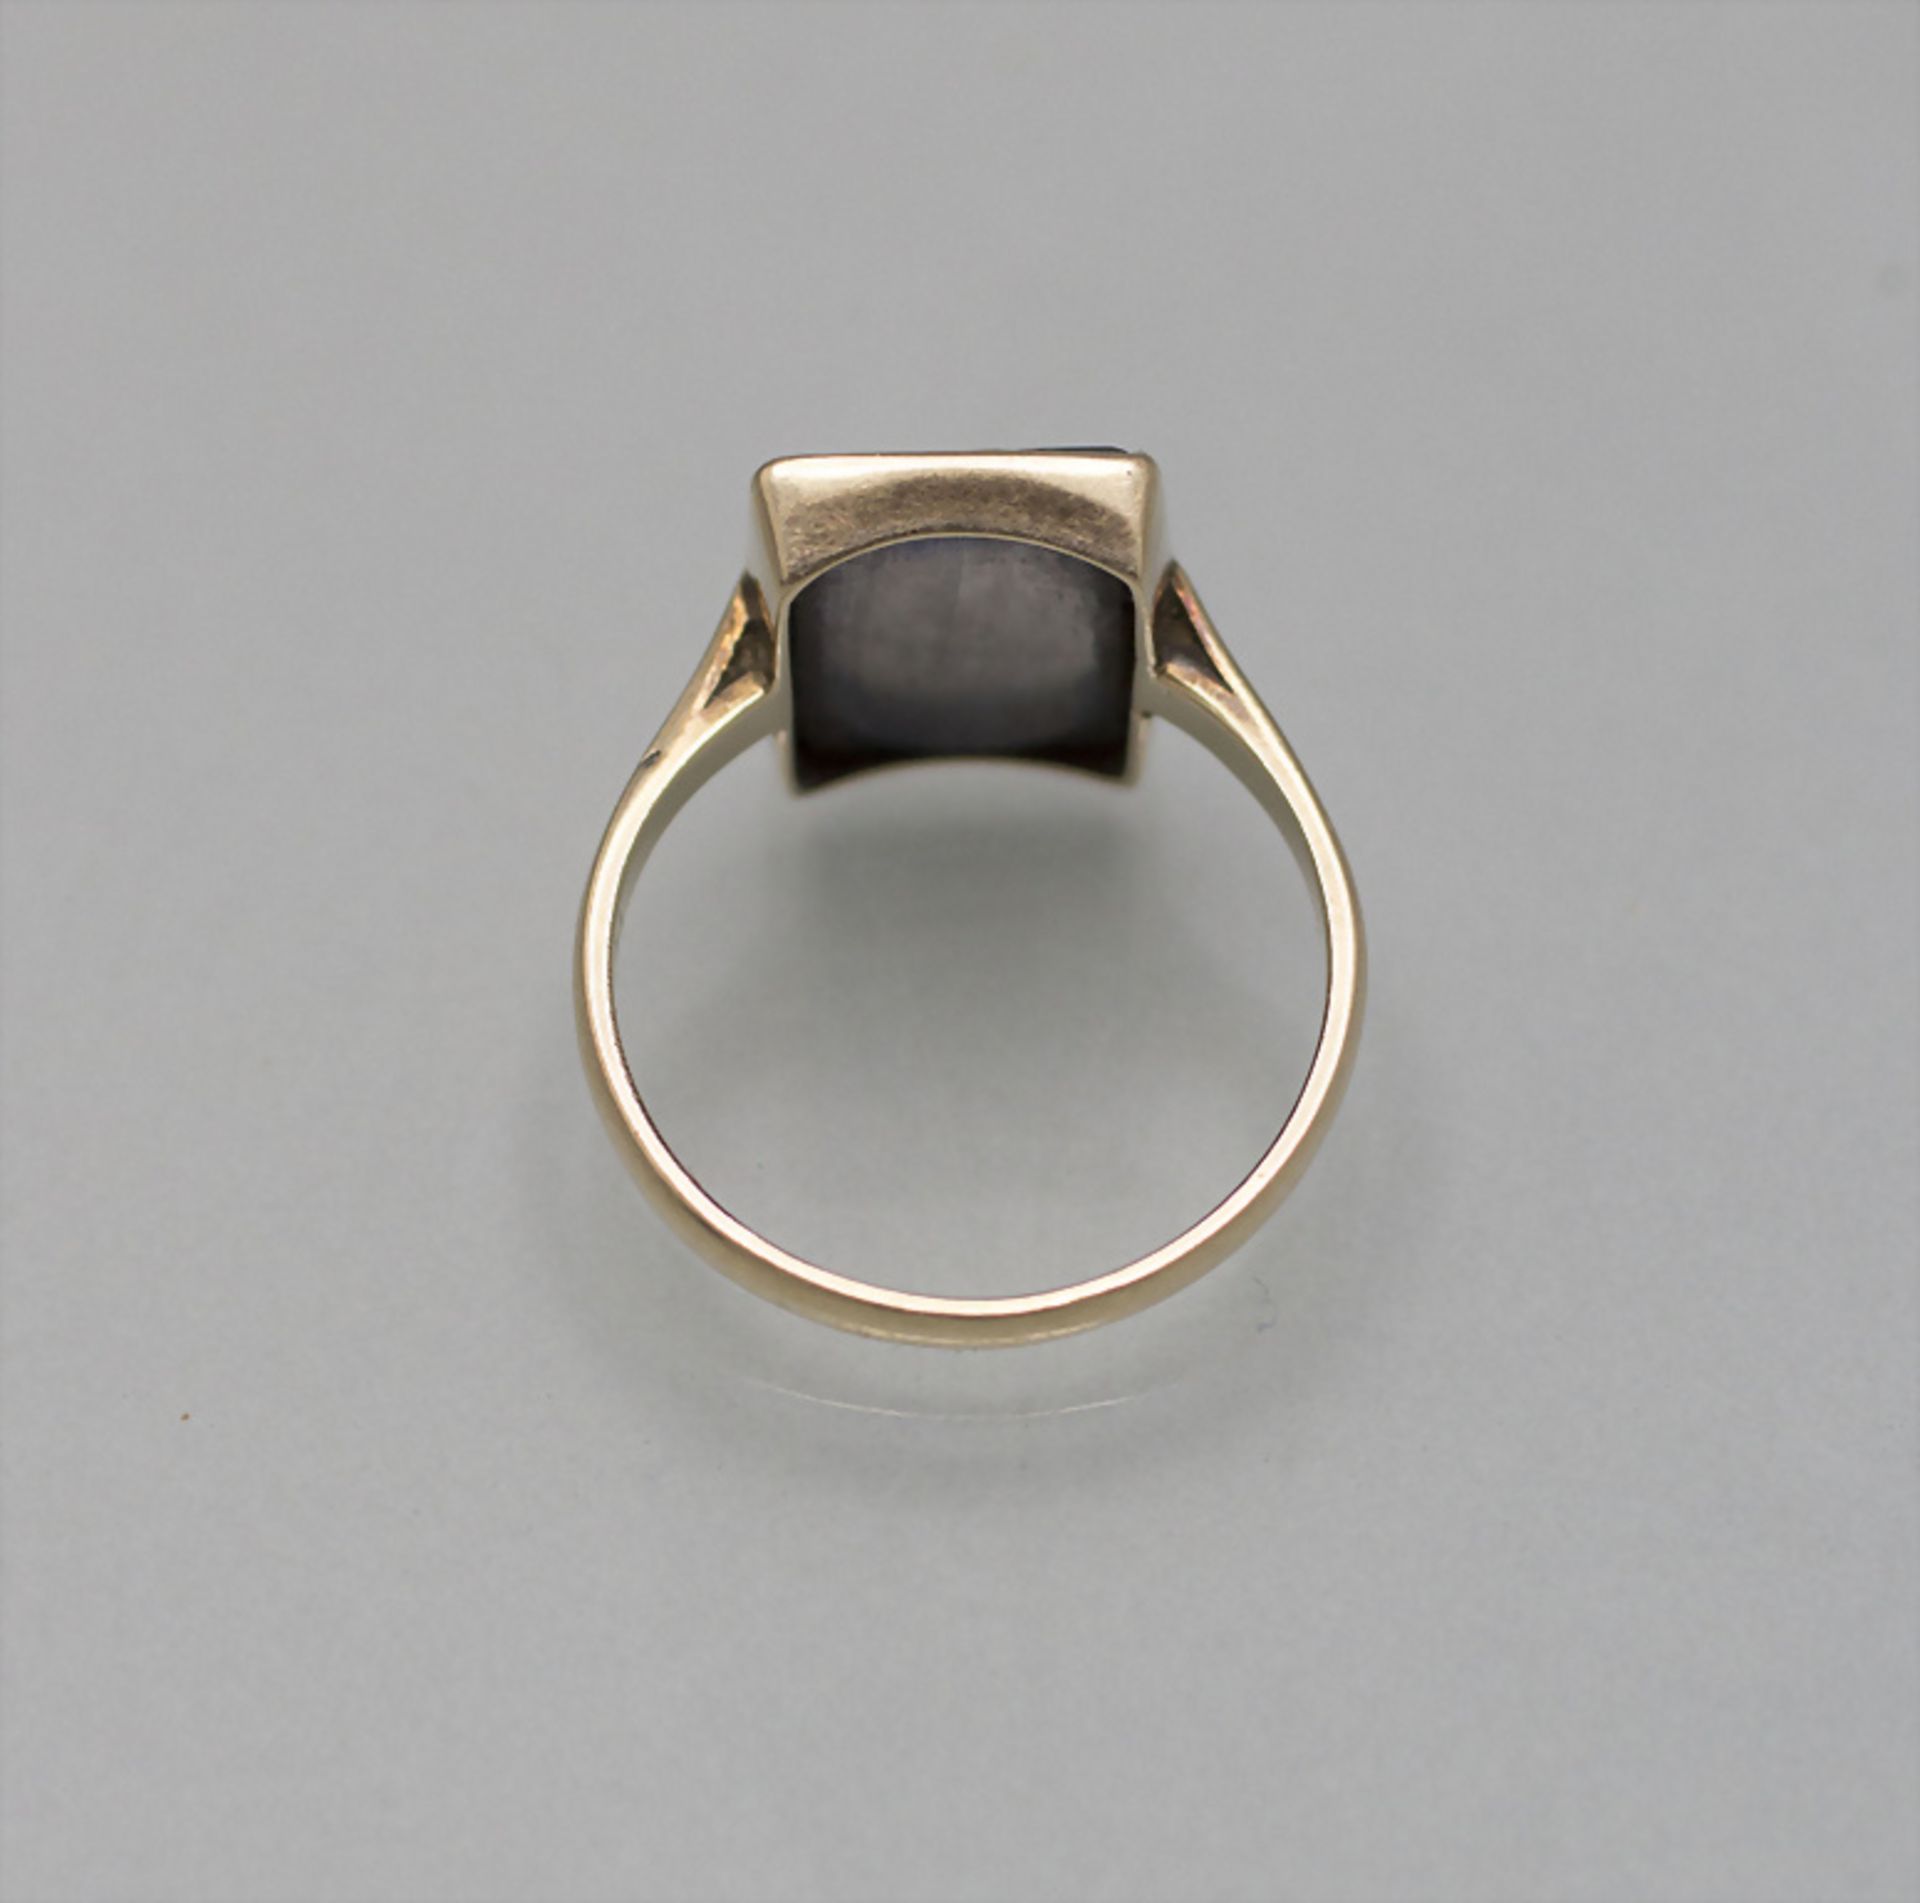 Damenring mit Gemme / A ladies 14 ct gold ring with a gem, um 1900 - Bild 2 aus 2